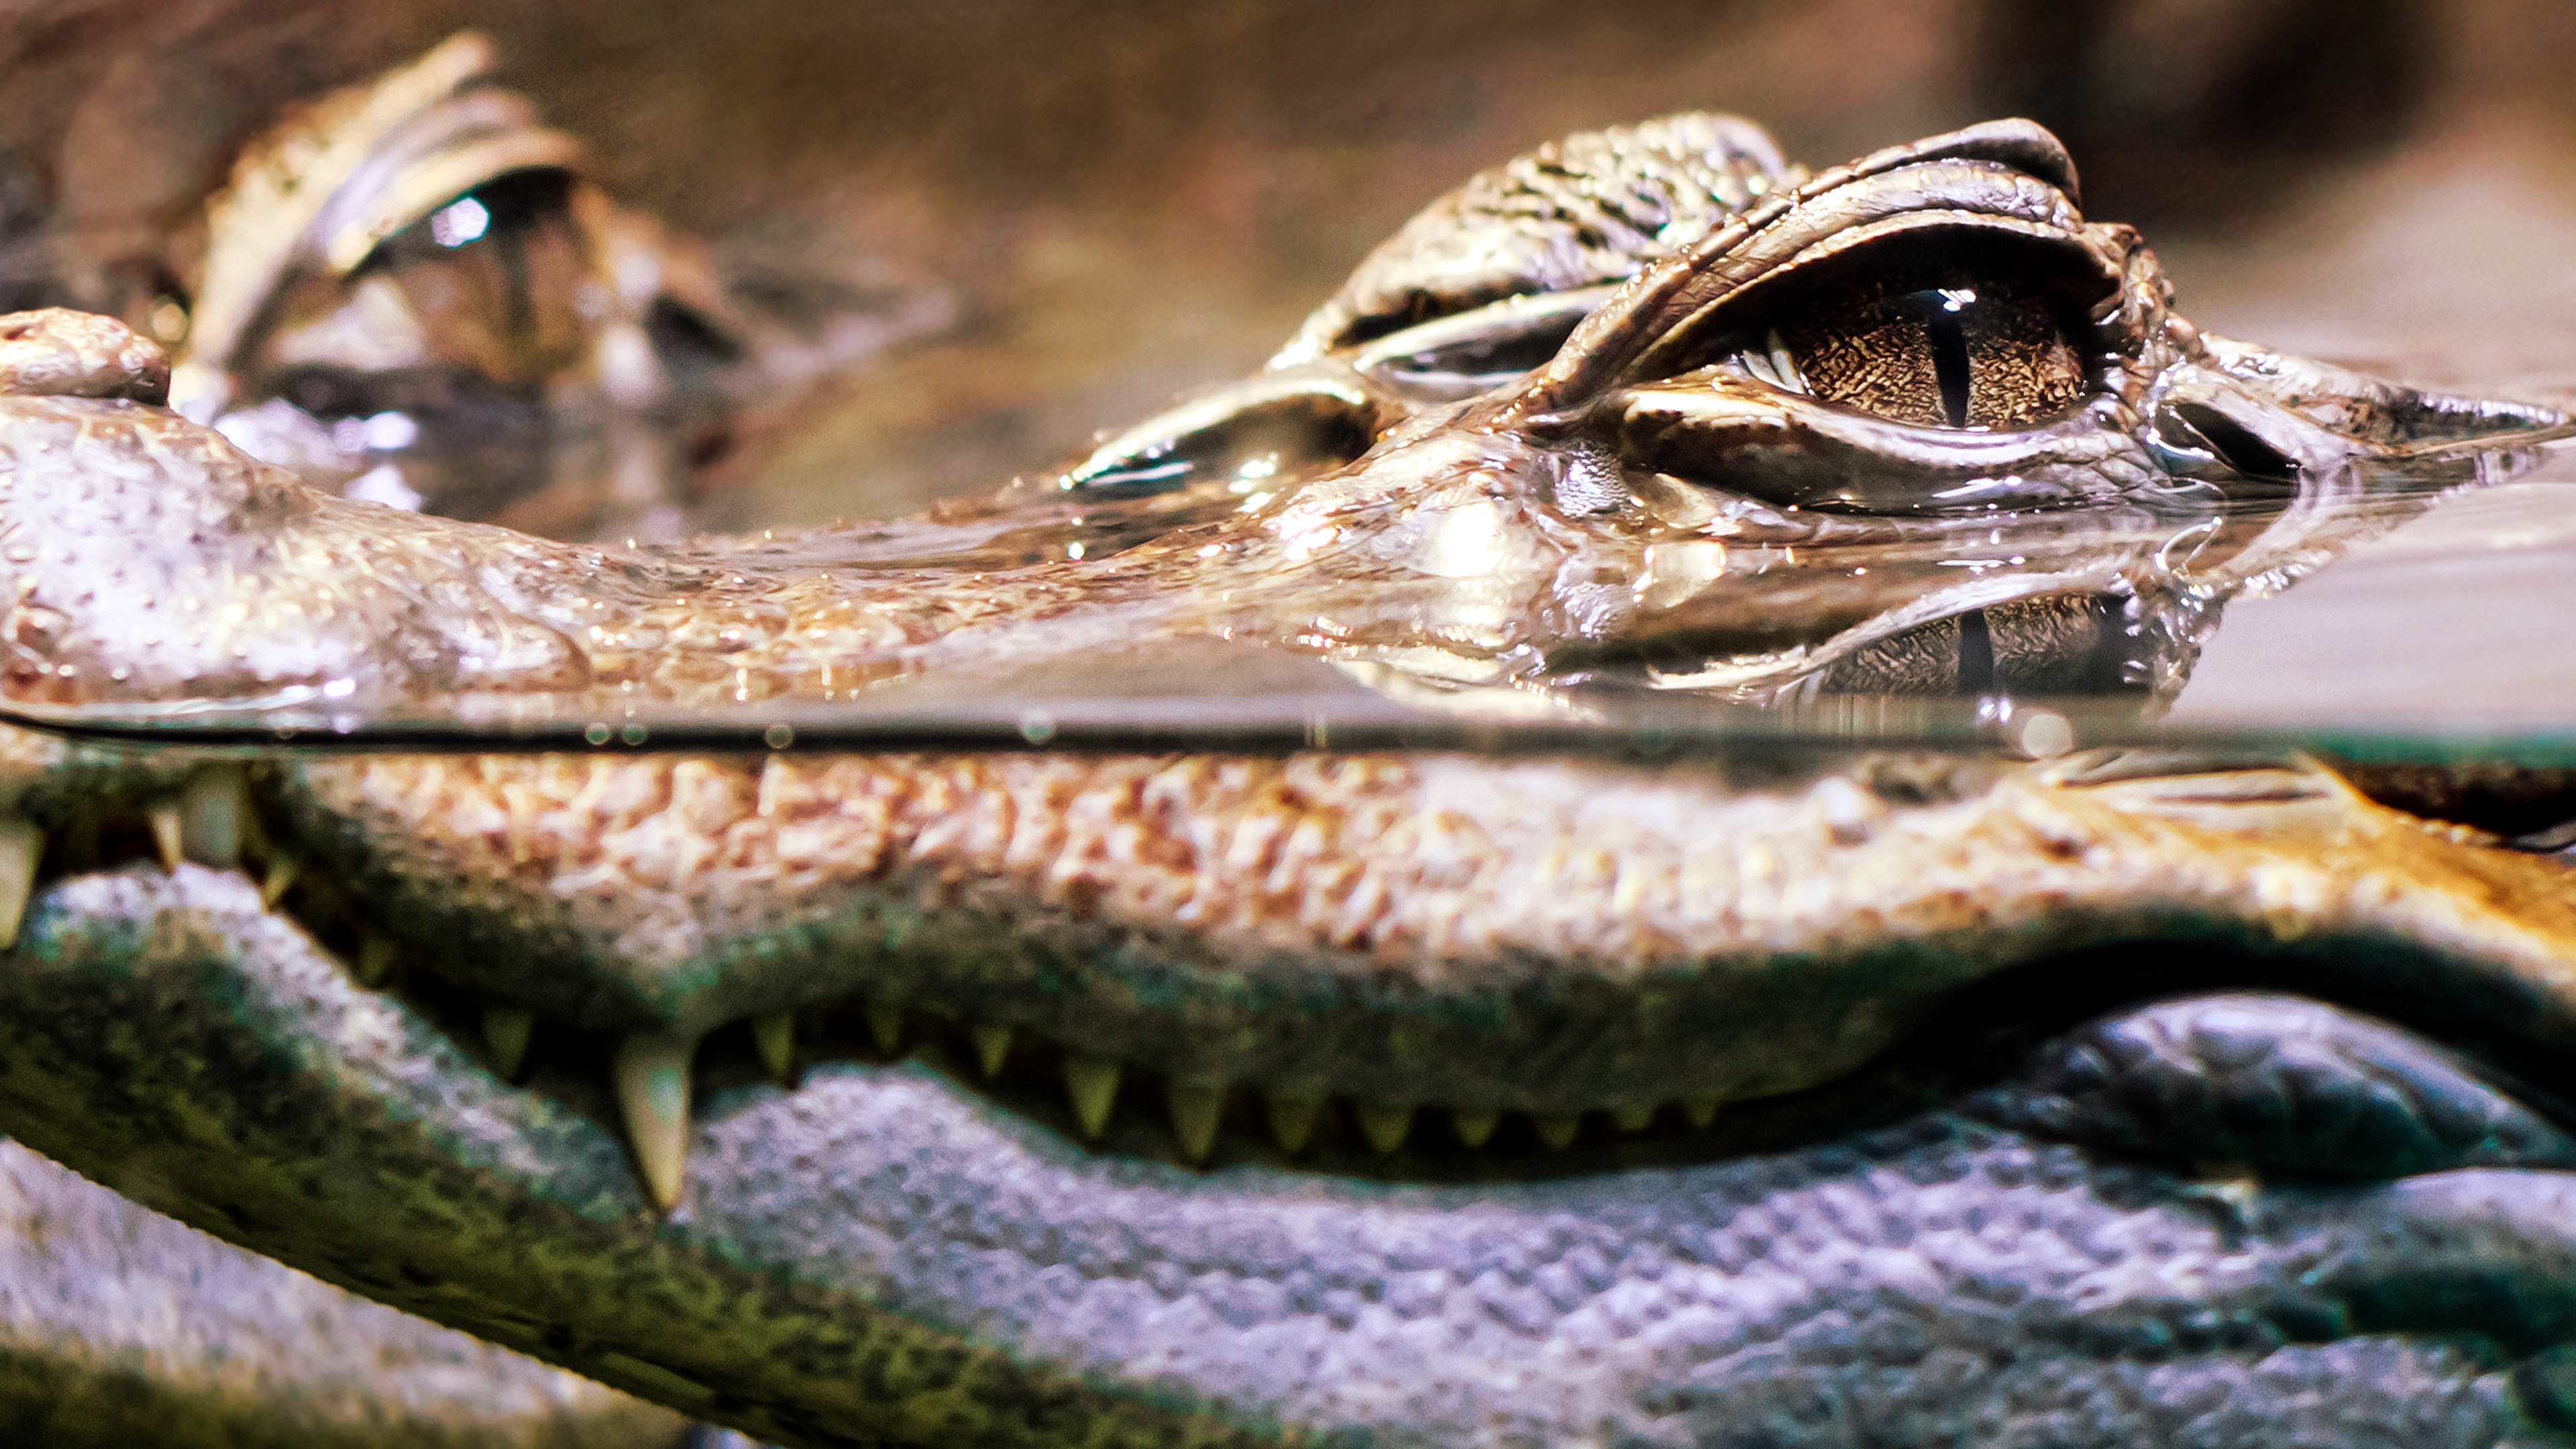 Sekretne życie krokodyli